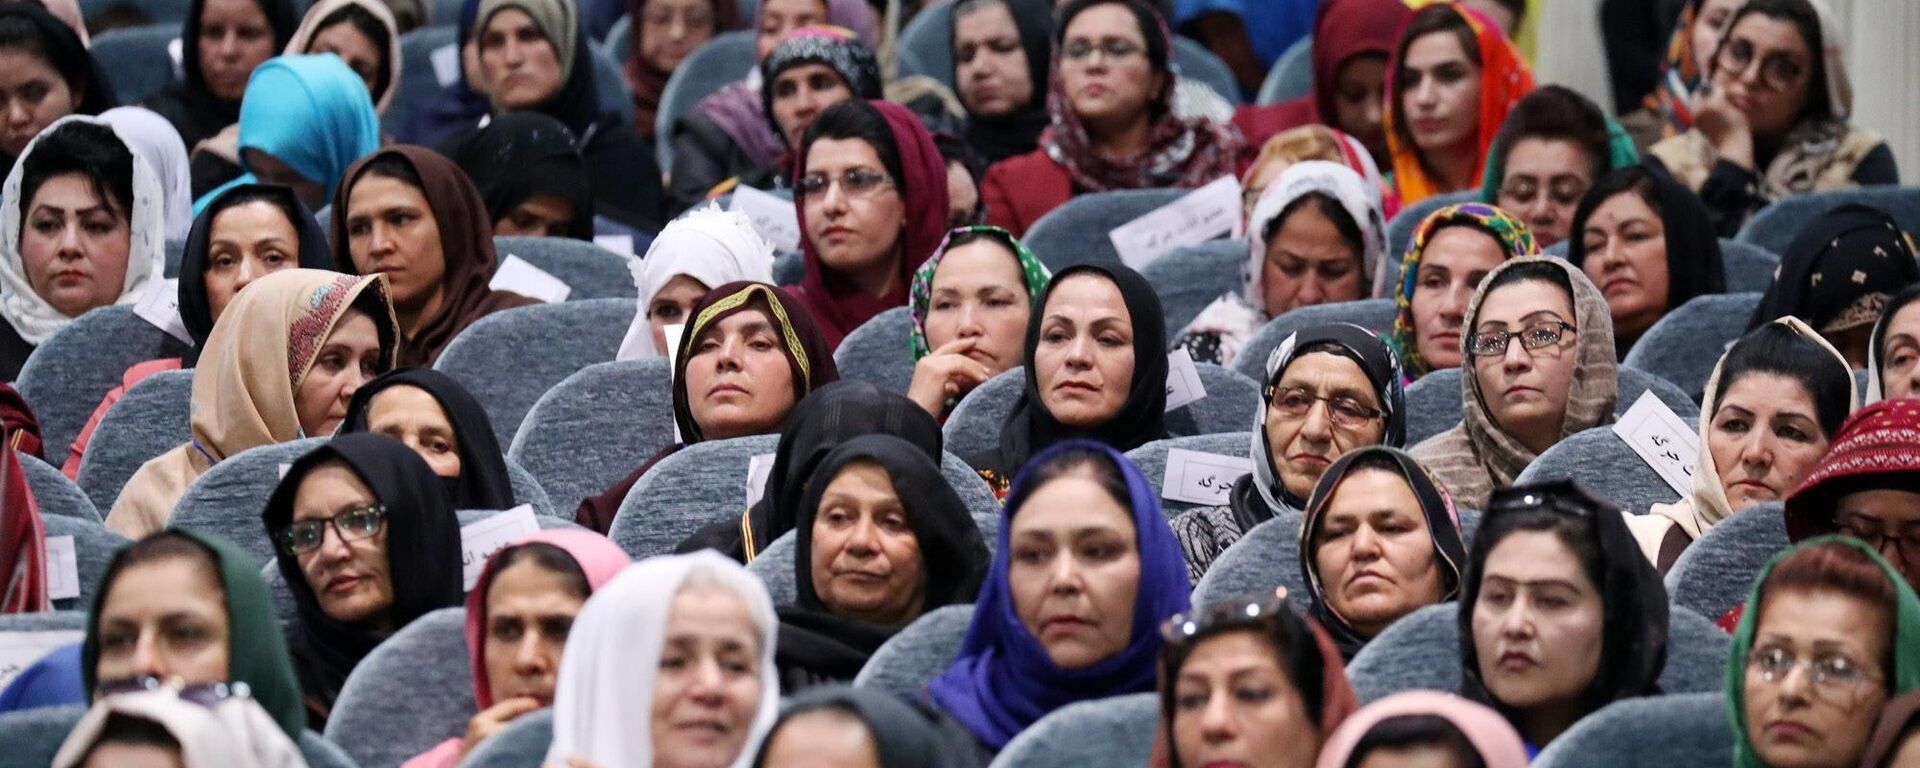 بازگشت کارکنان زن فرودگاه کابل به سرکارشان با حجاب اسلامی + عکس  - اسپوتنیک ایران  , 1920, 15.09.2021